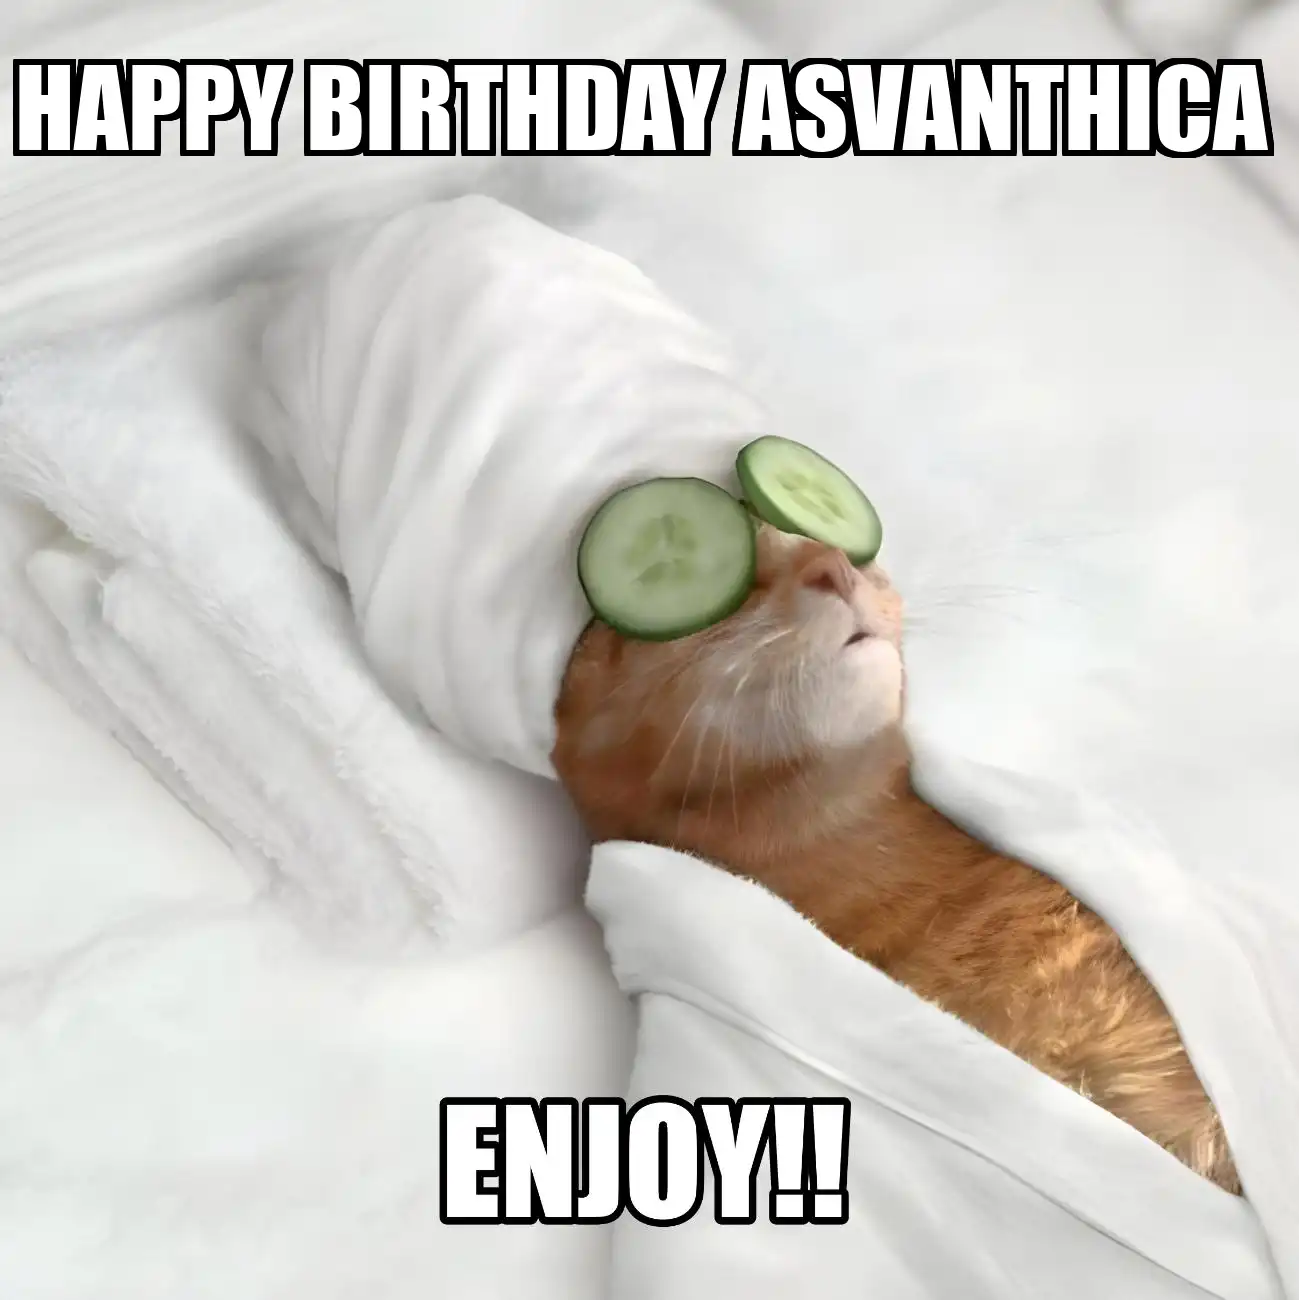 Happy Birthday Asvanthica Enjoy Cat Meme